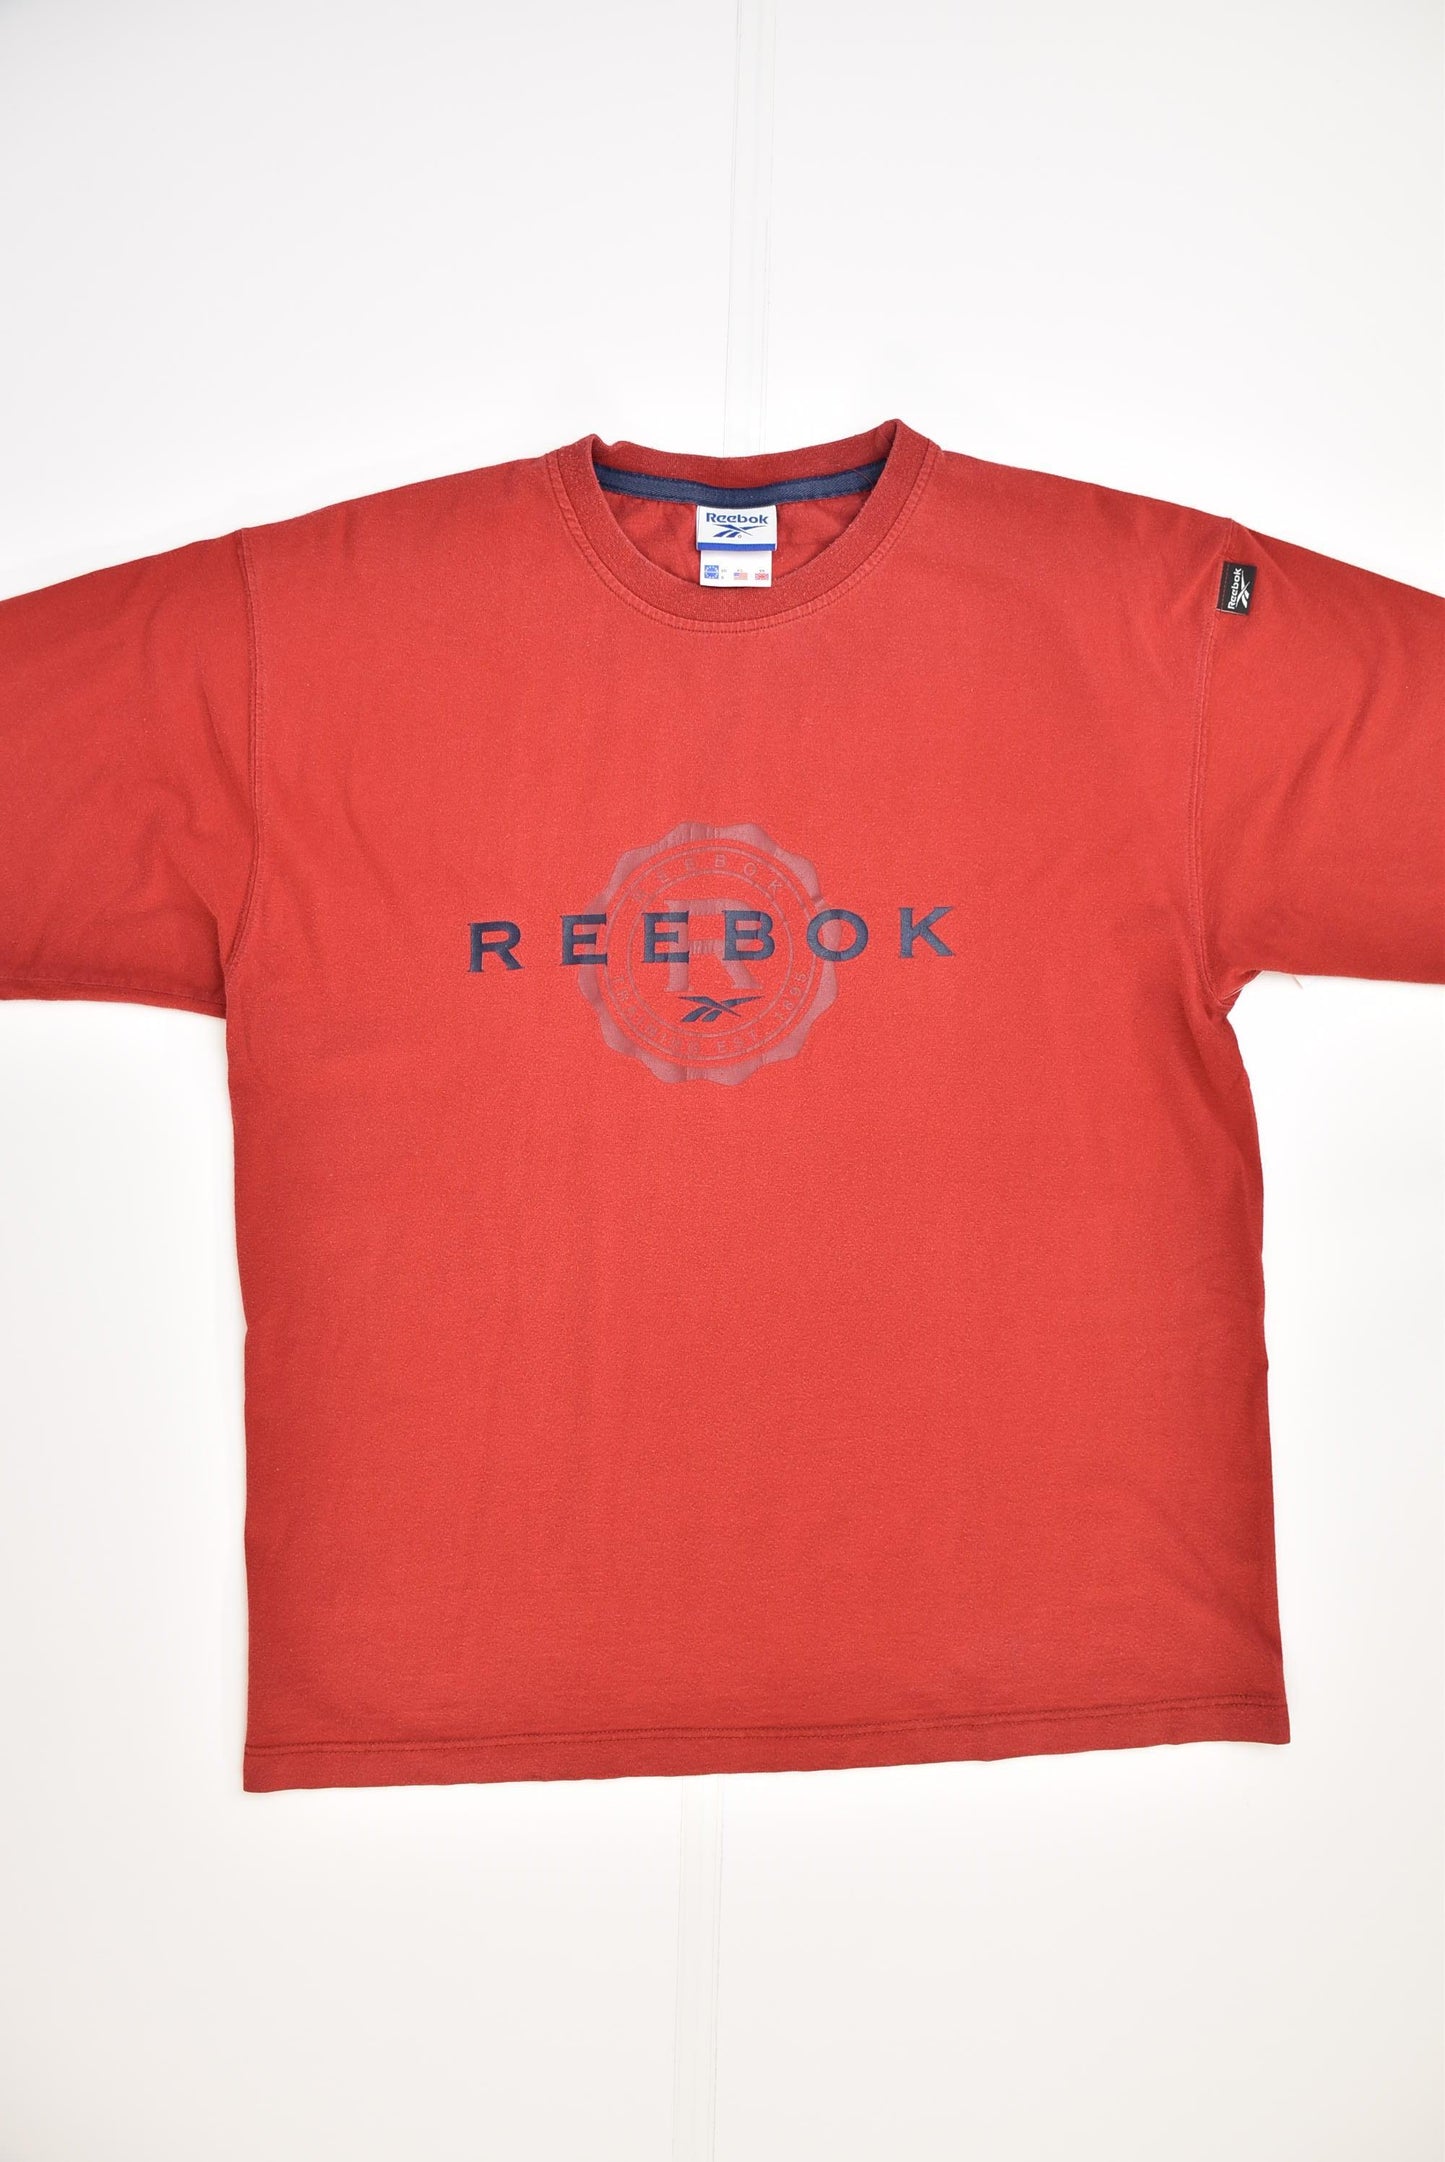 Reebok T-shirt (M) - Slayyy Vintage